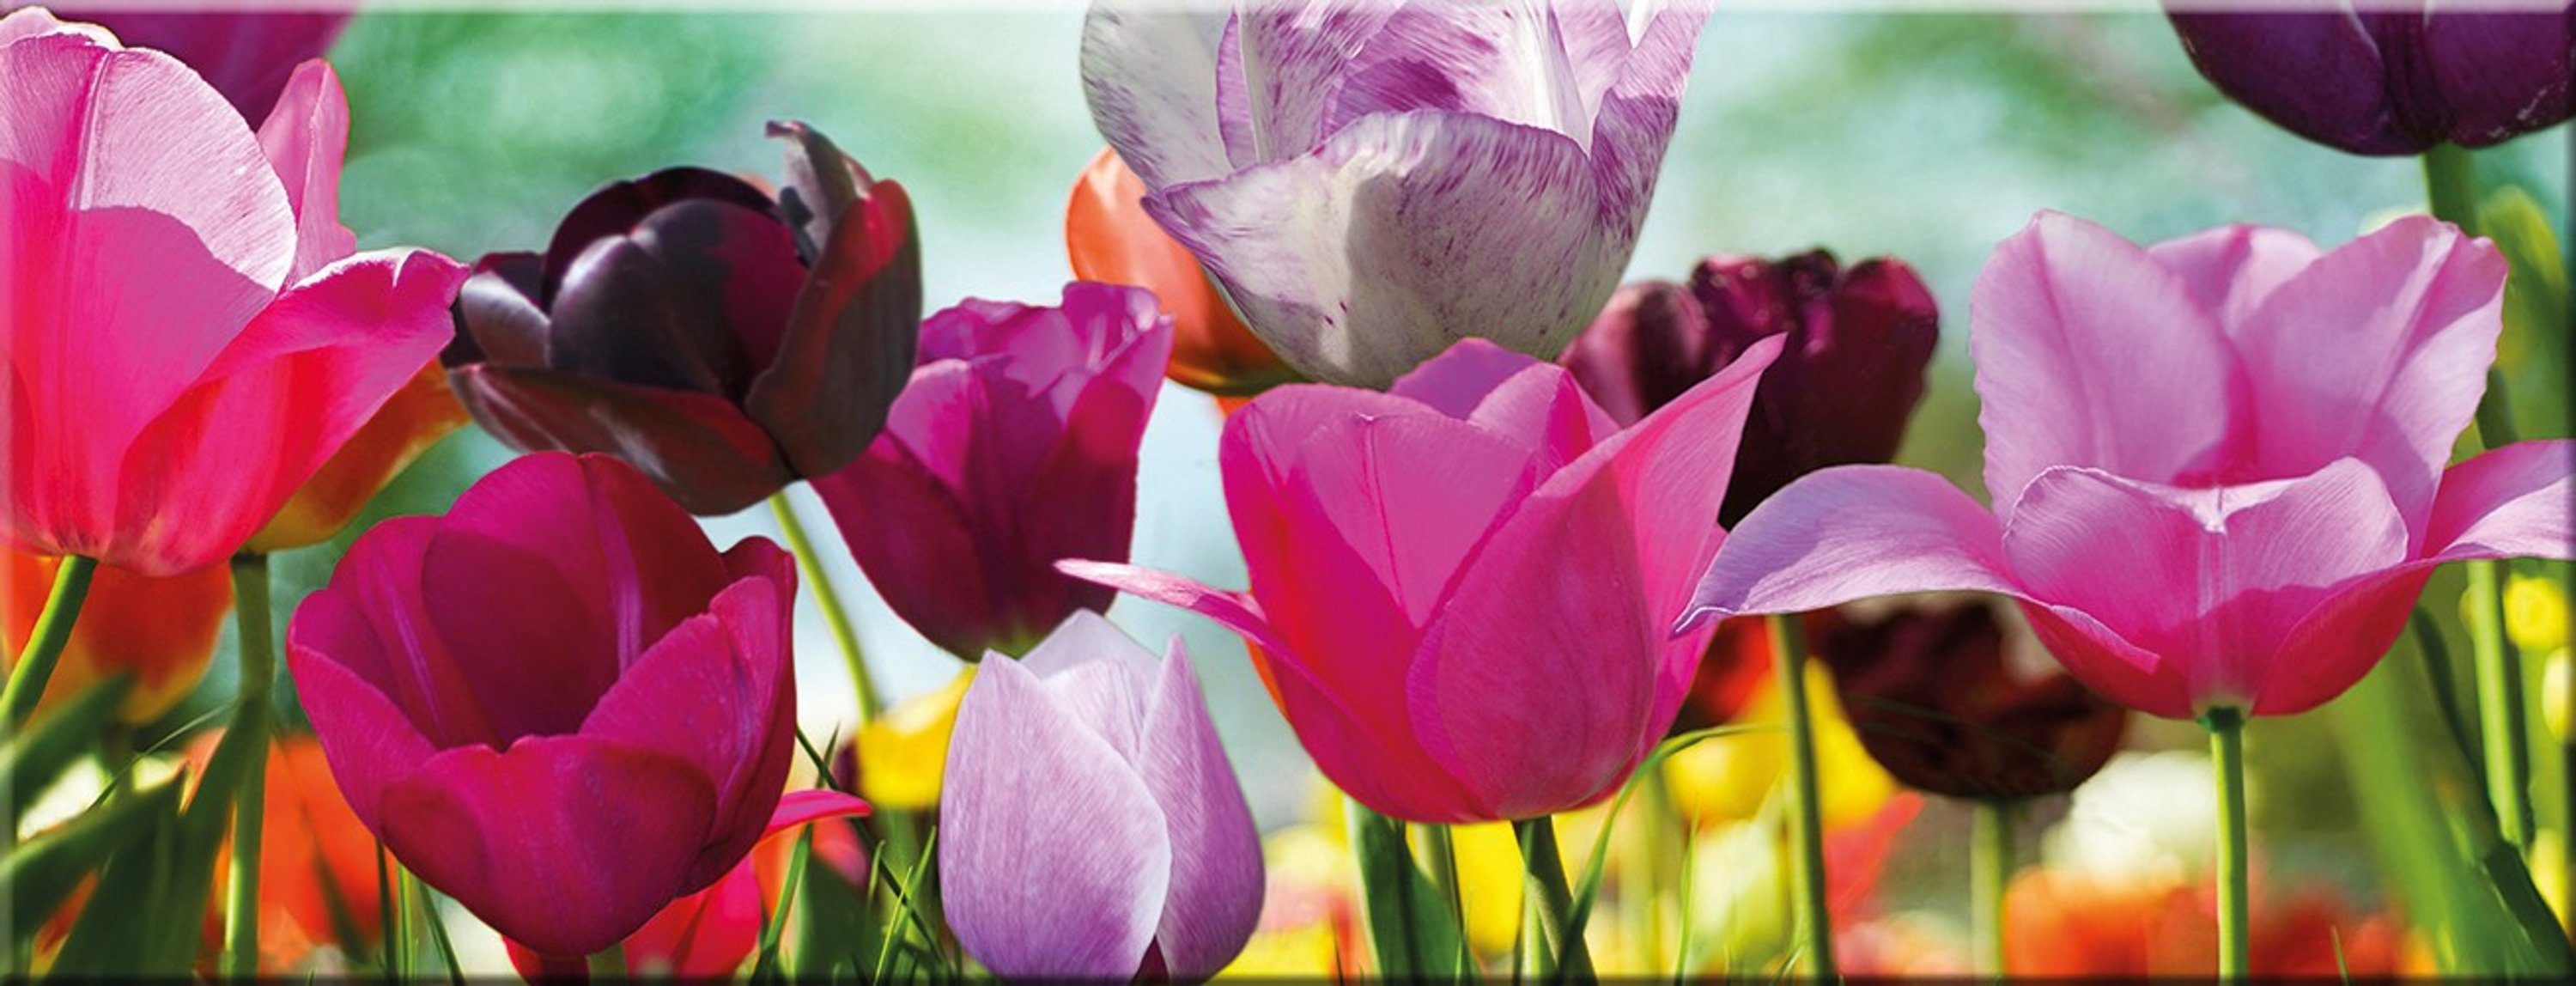 artissimo Glasbild Glasbild 80x30cm Bild aus Glas Blumen Tulpen bunt farbenfroh, Natur und Blumen: Blumenwiese im Frühling | Bilder